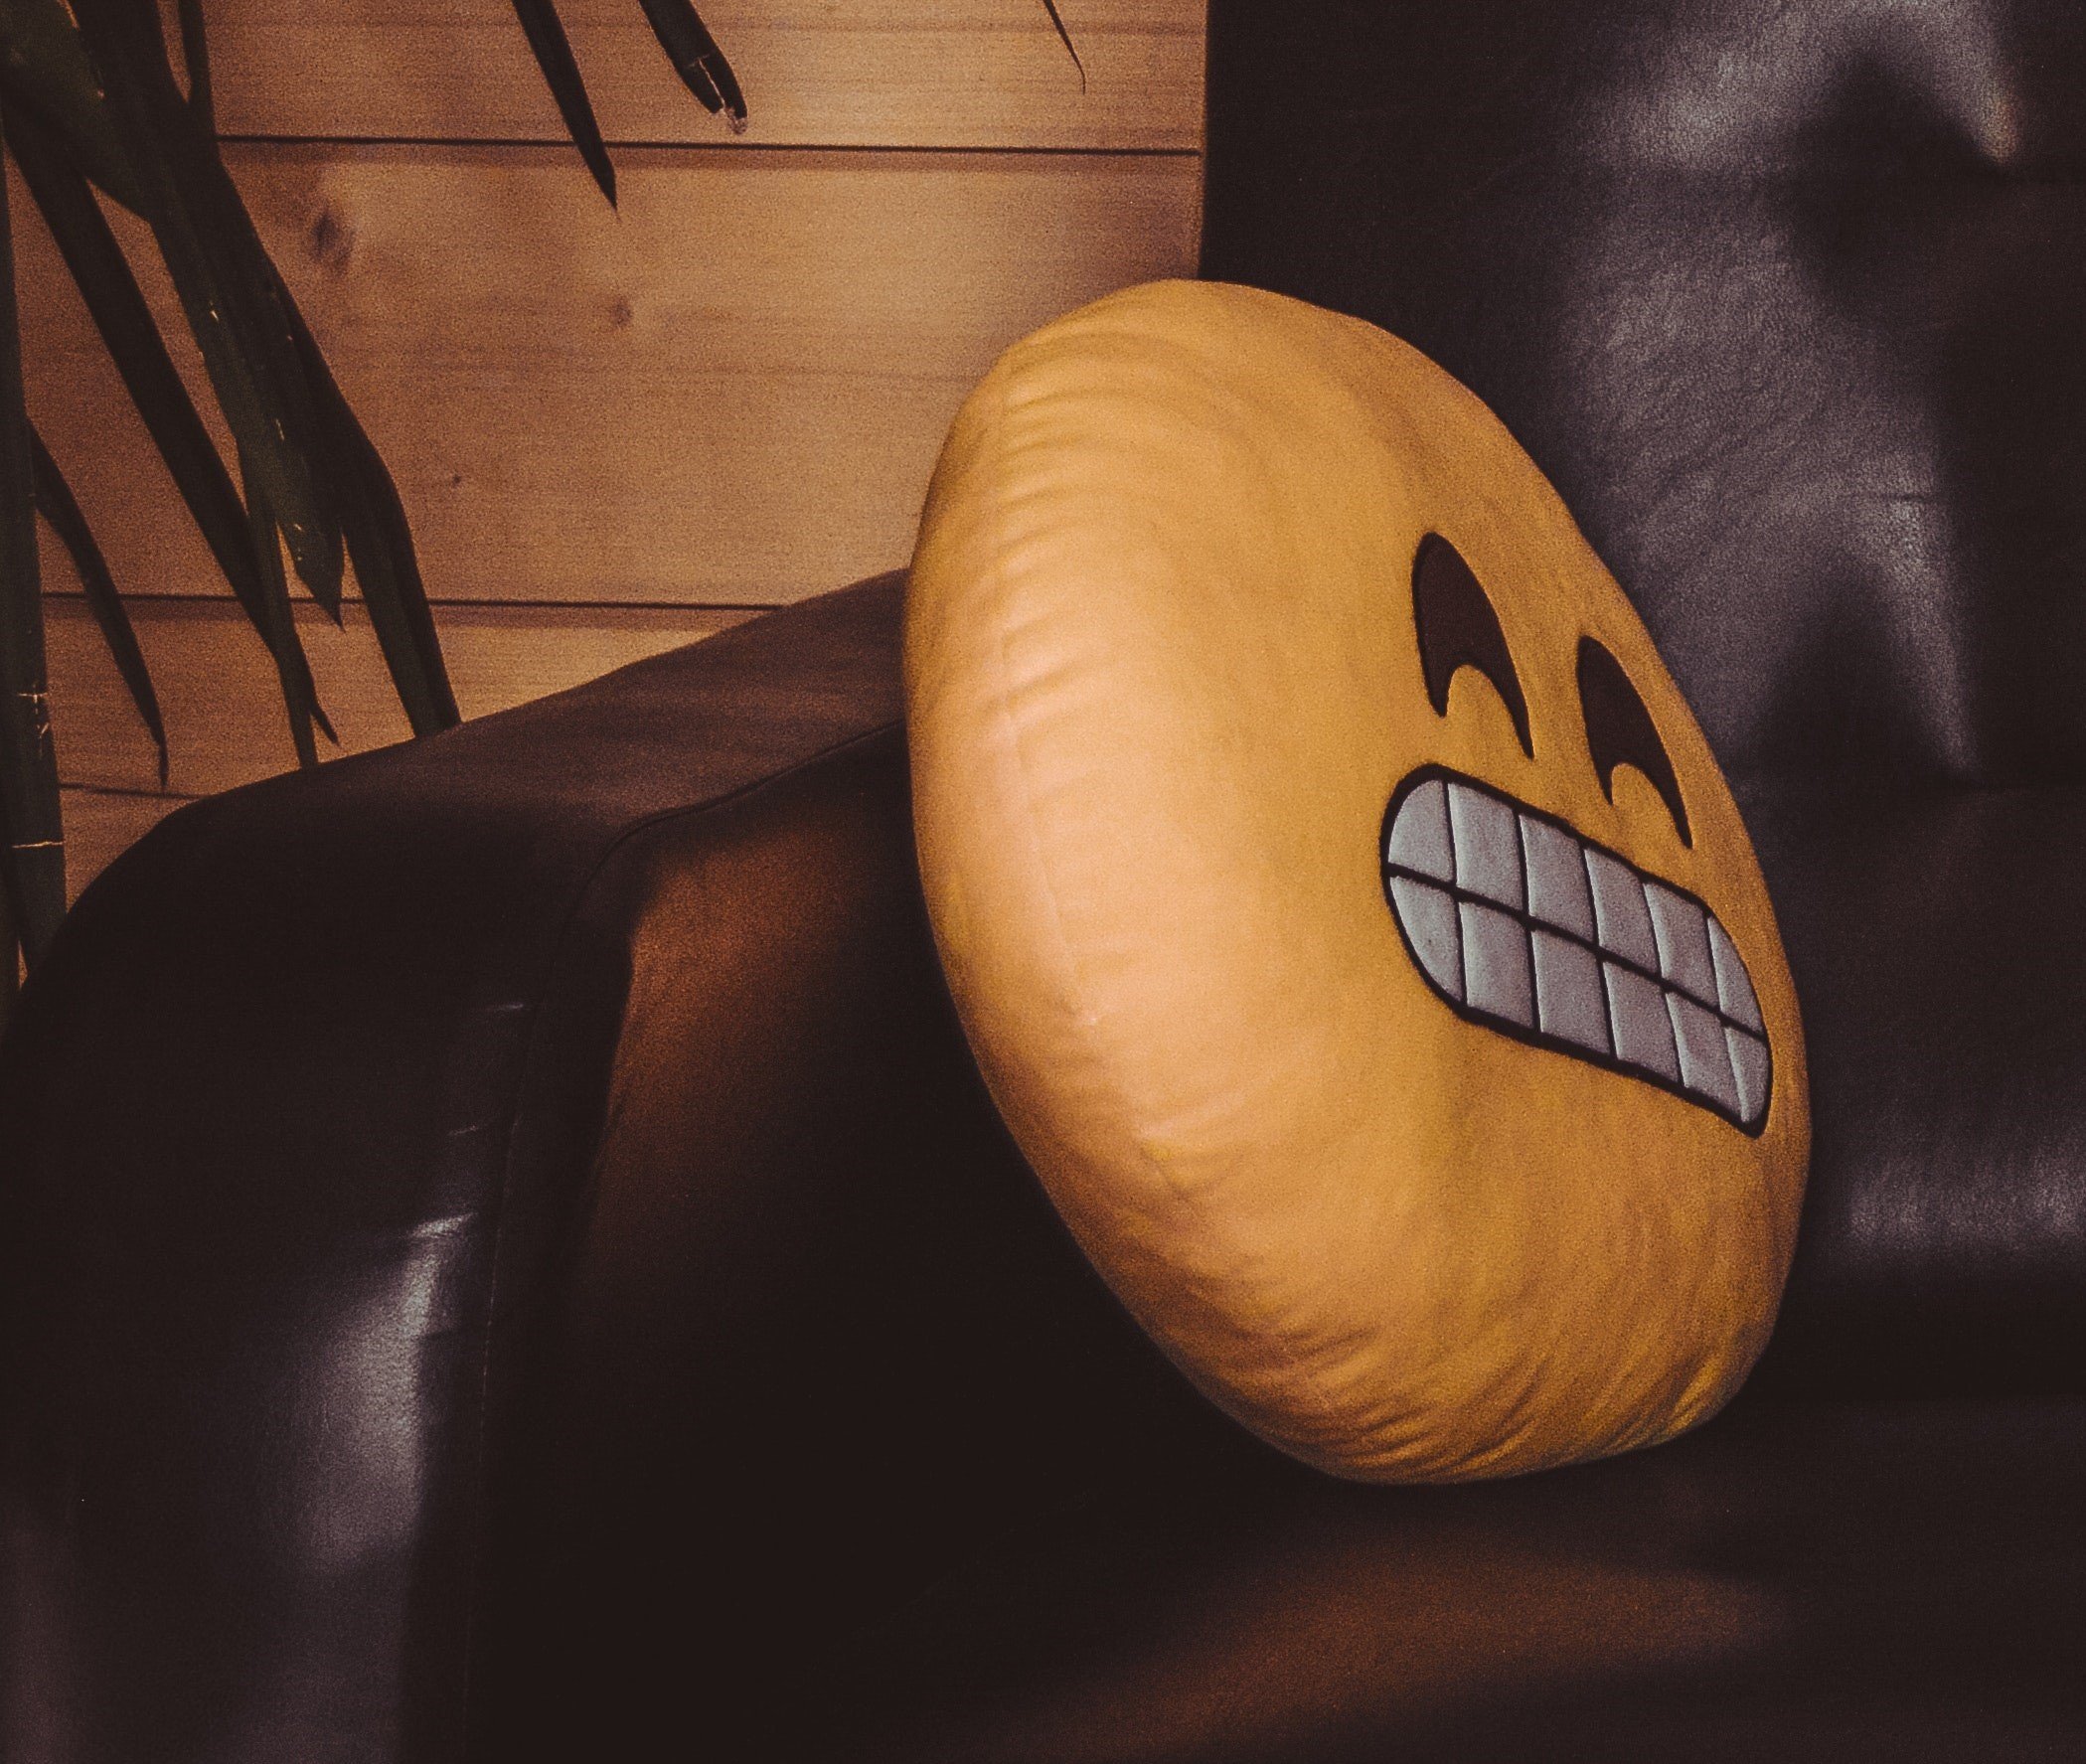 Almofada do emoji no sofá